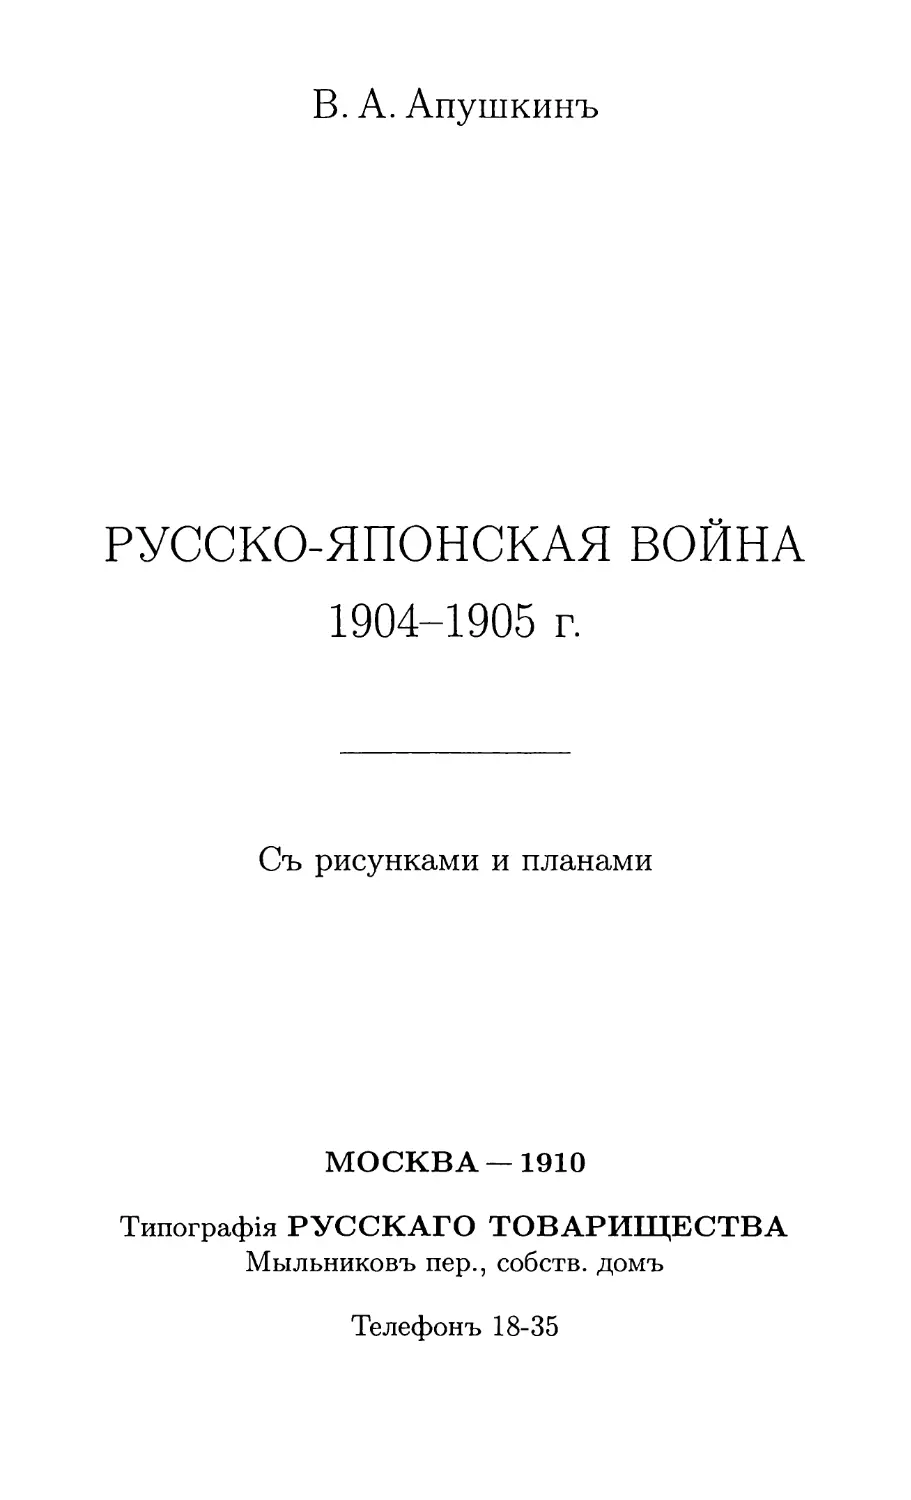 РУССКО-ЯПОНСКАЯ ВОЙНА 1904-1905 г.